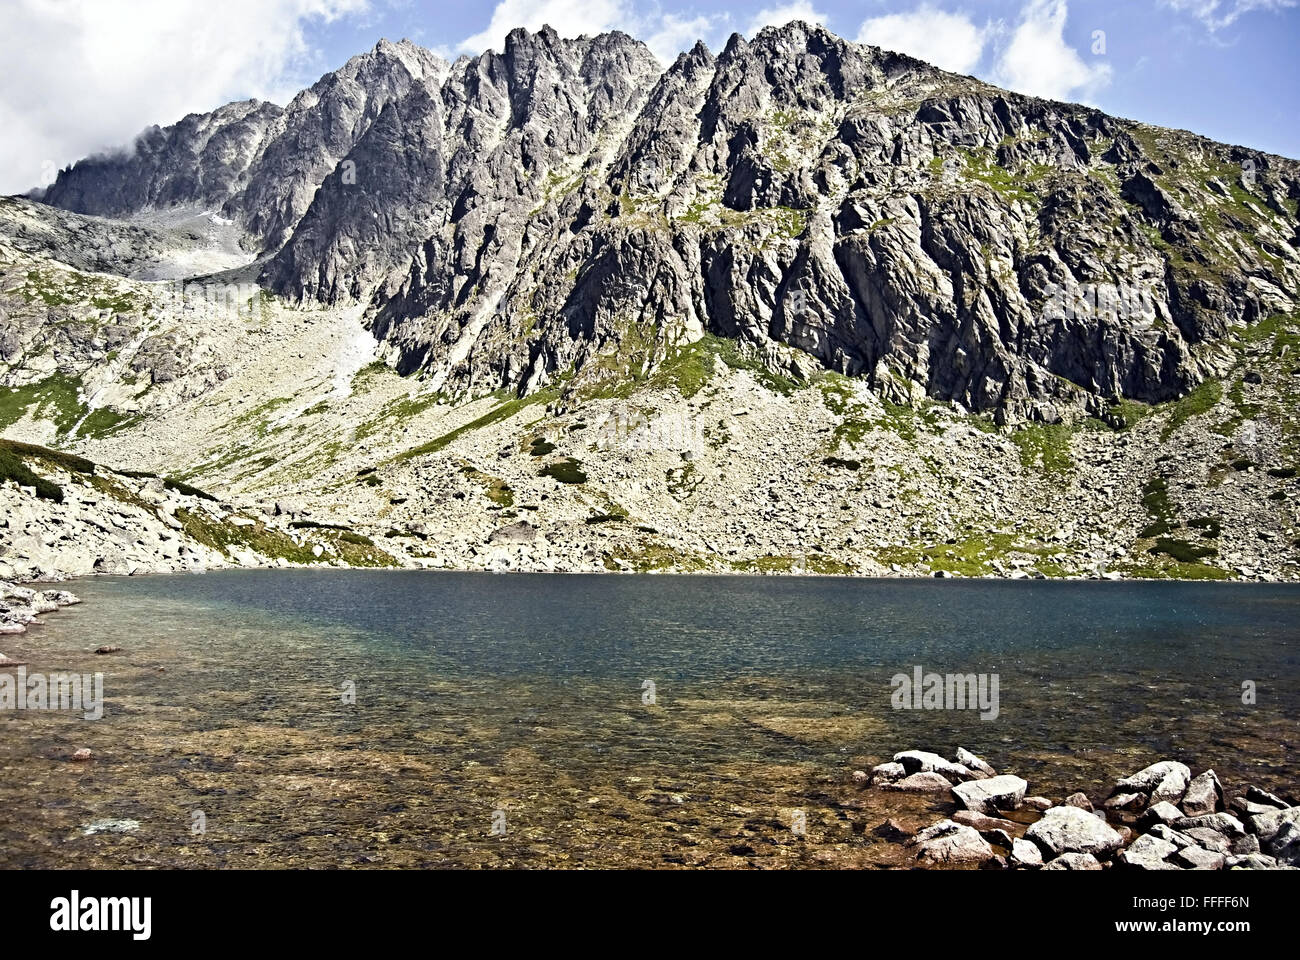 Batizovske pleso lago con Gerlachovsky stit pico en altas montañas Tatras Foto de stock